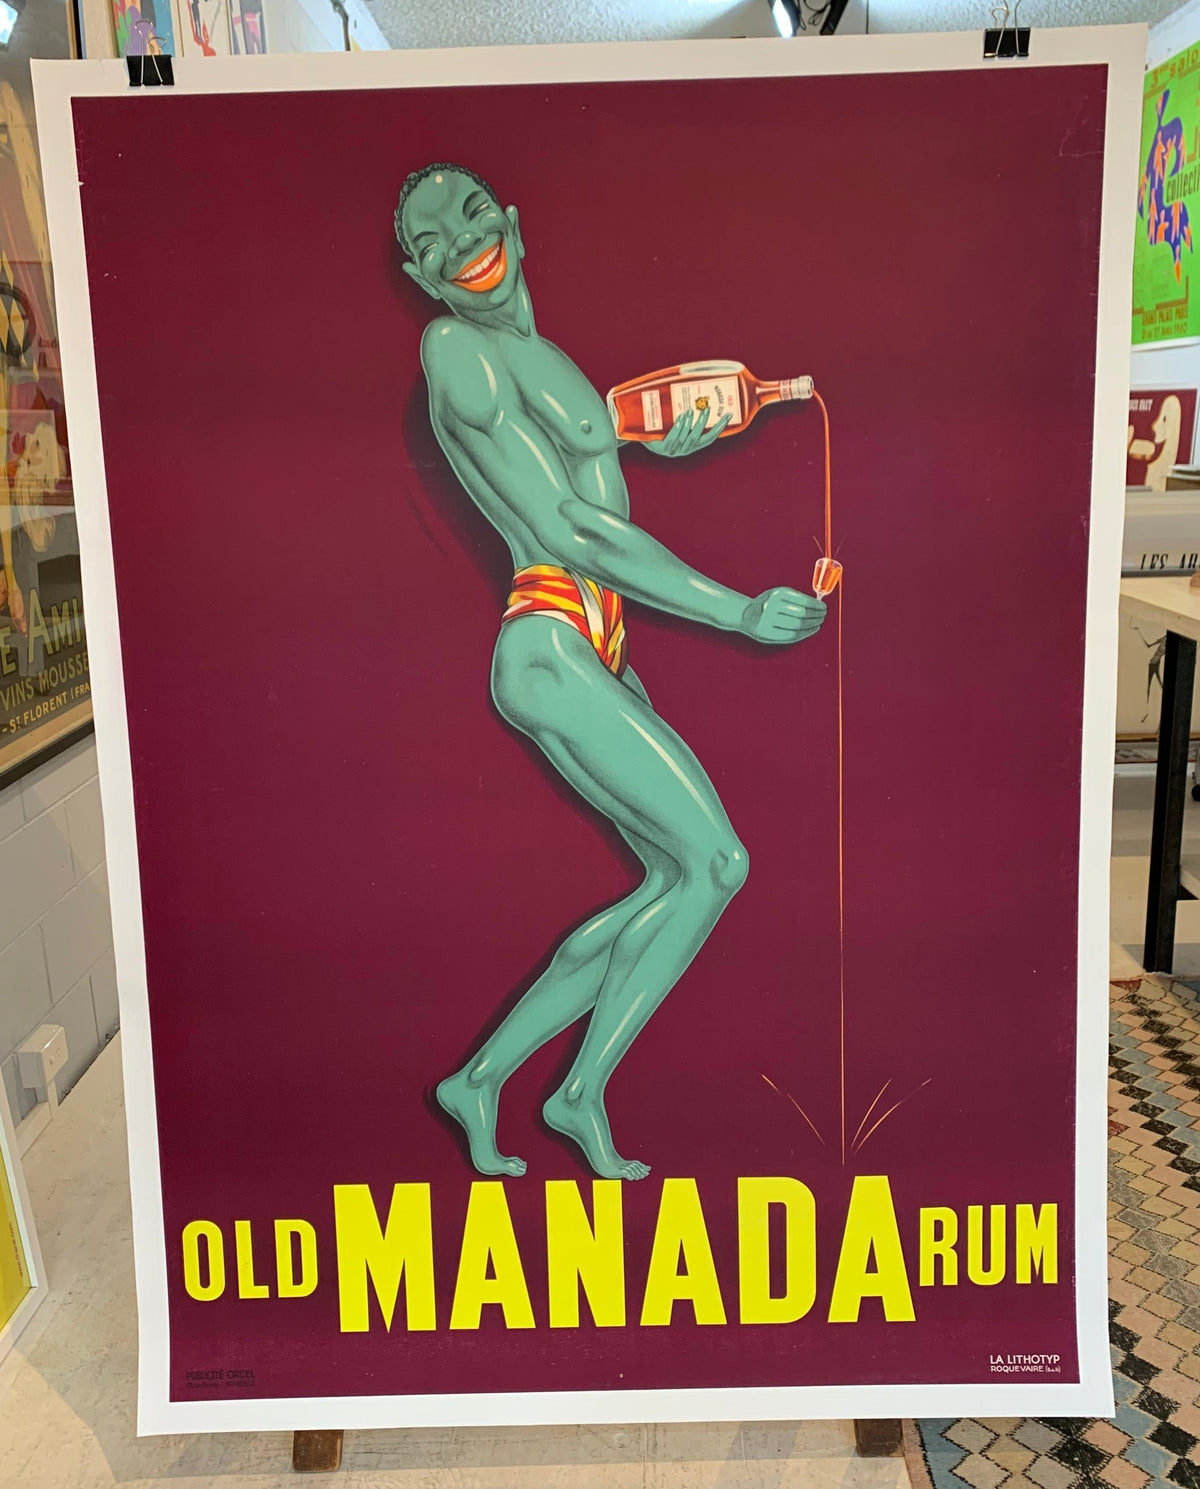 Old Manada Rum